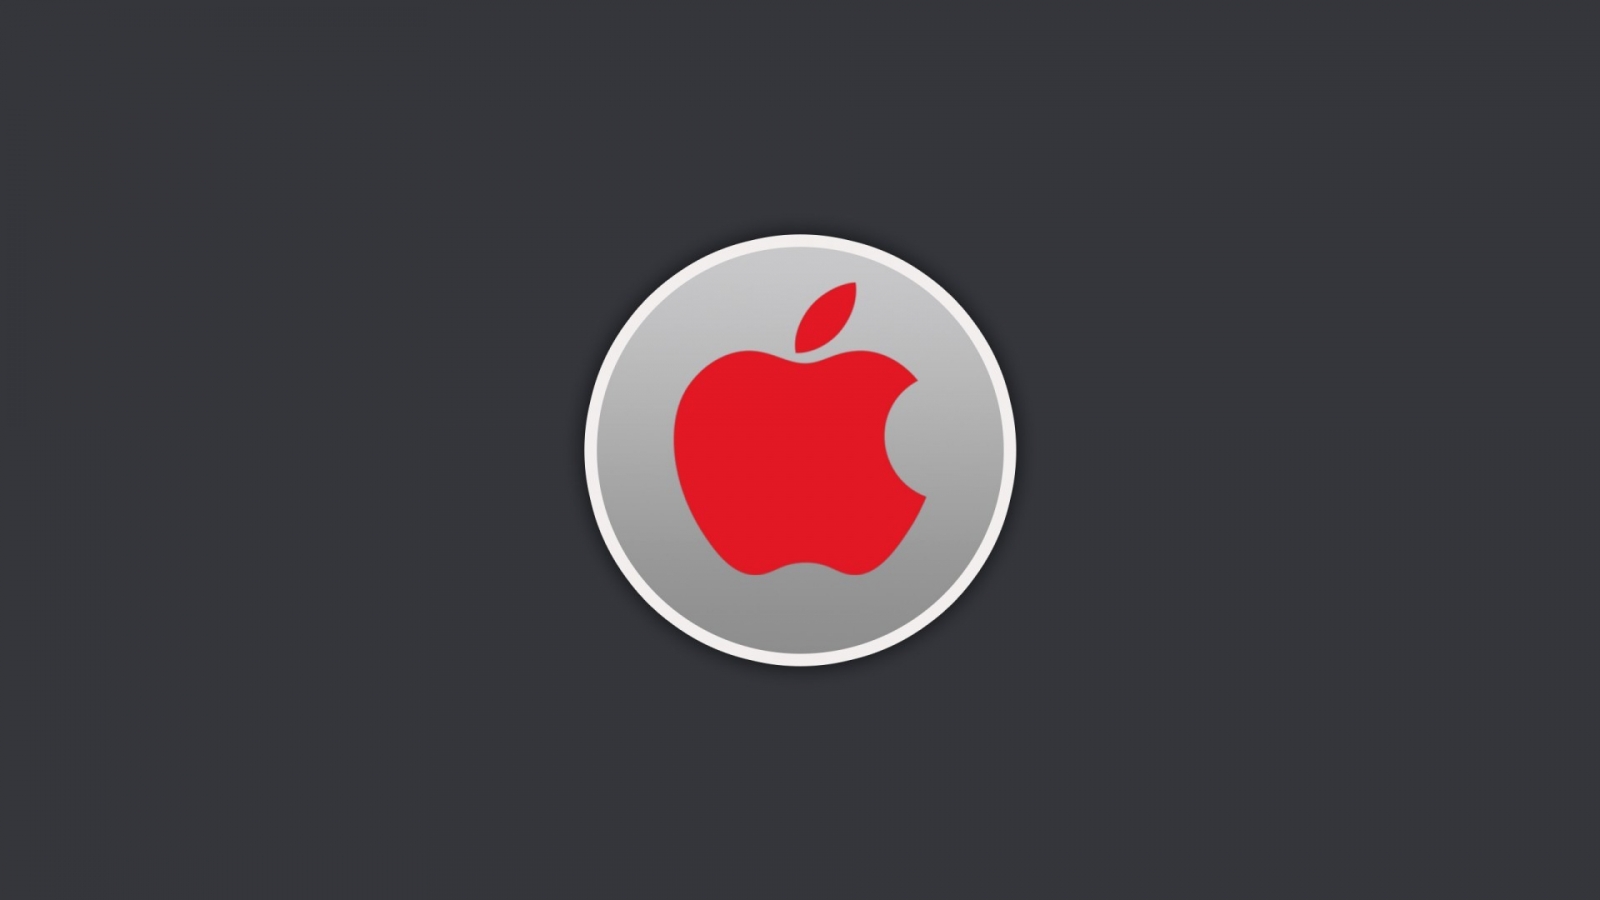 Red Apple Logo for 1600 x 900 HDTV resolution